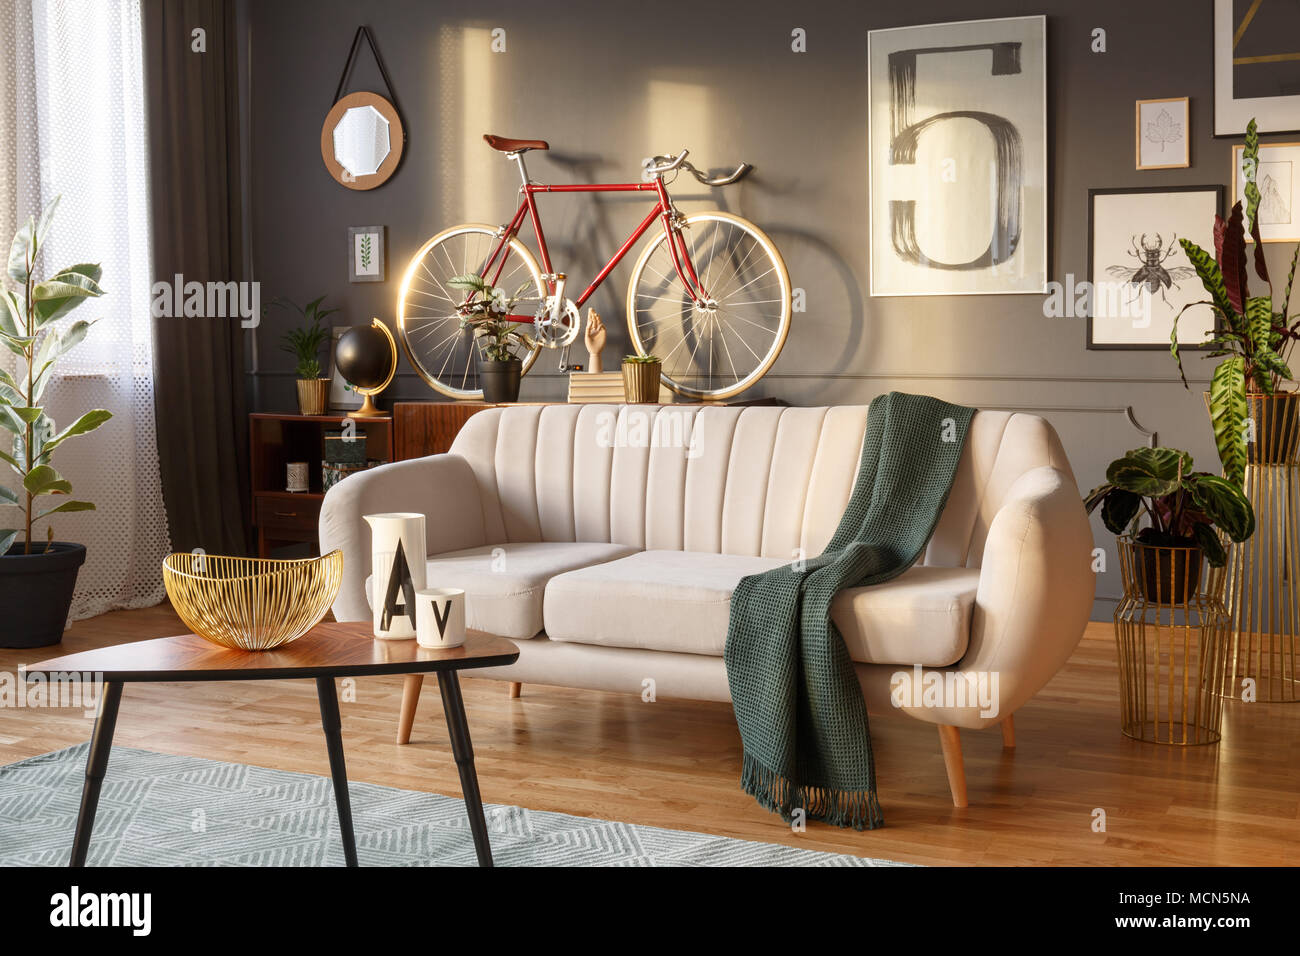 Canapé blanc avec une couverture de laine, table basse en bois et du vélo dans un salon intérieur gris Banque D'Images